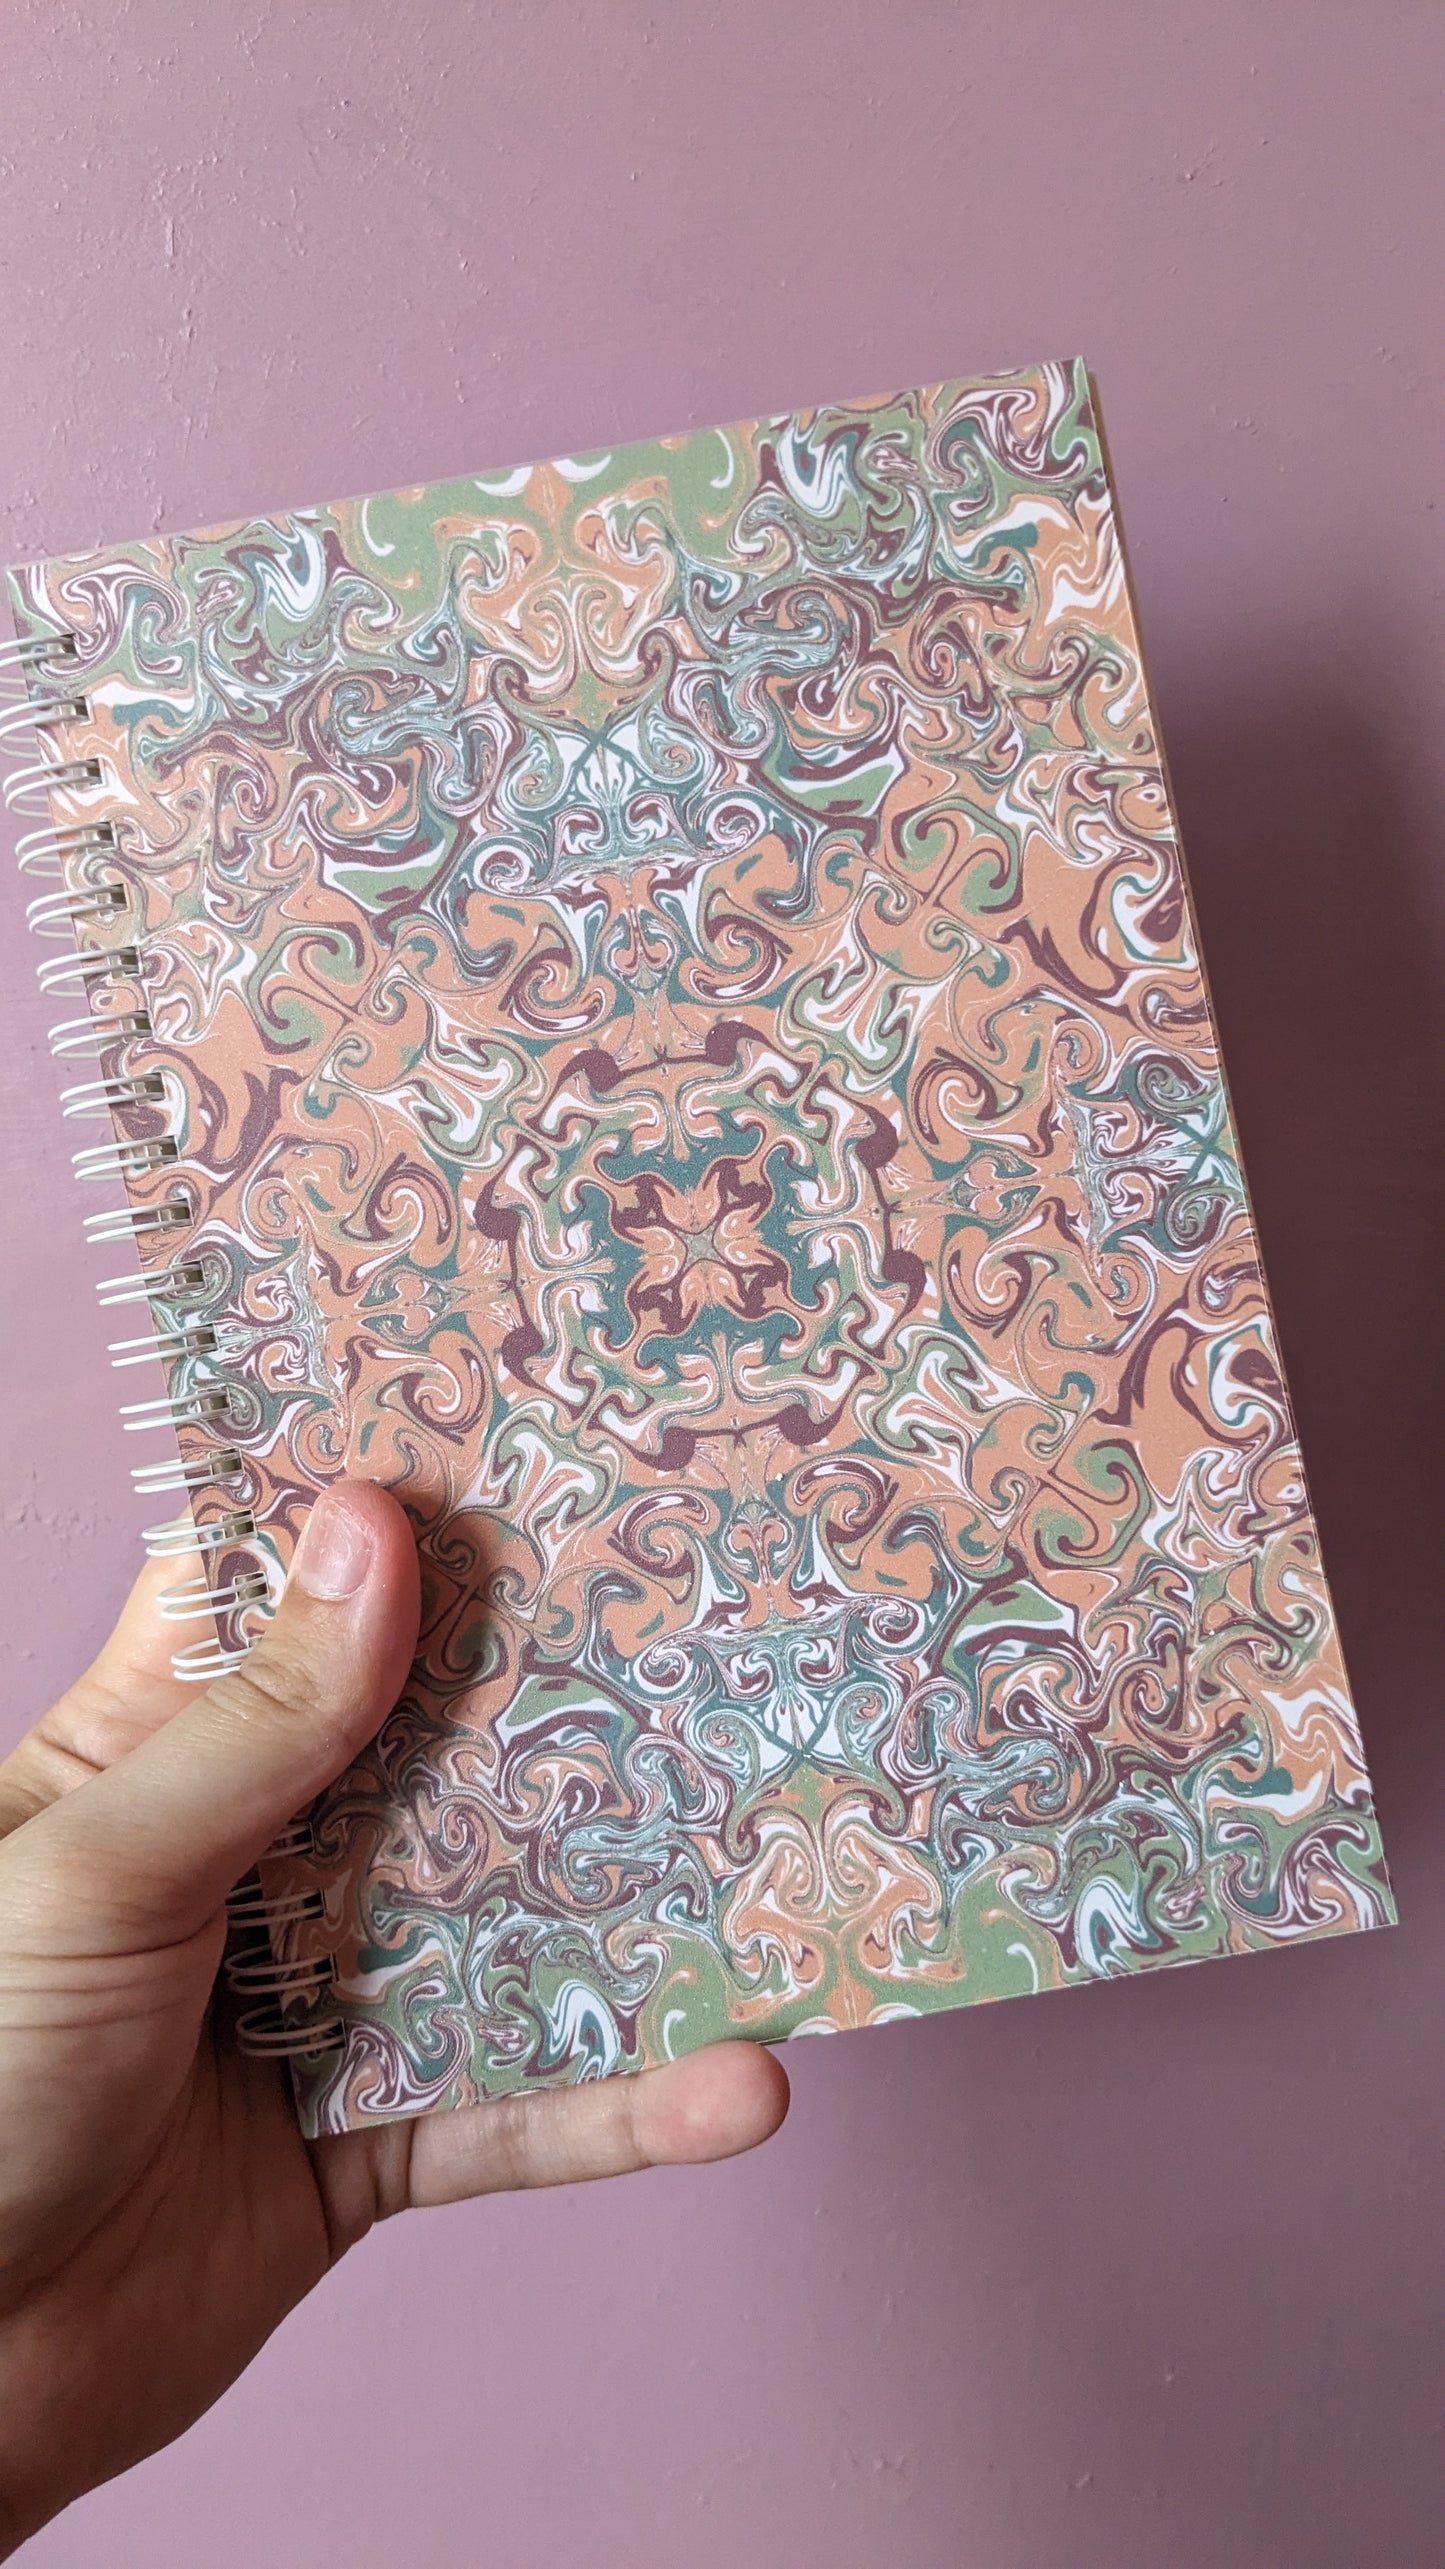 Mandala Notebook